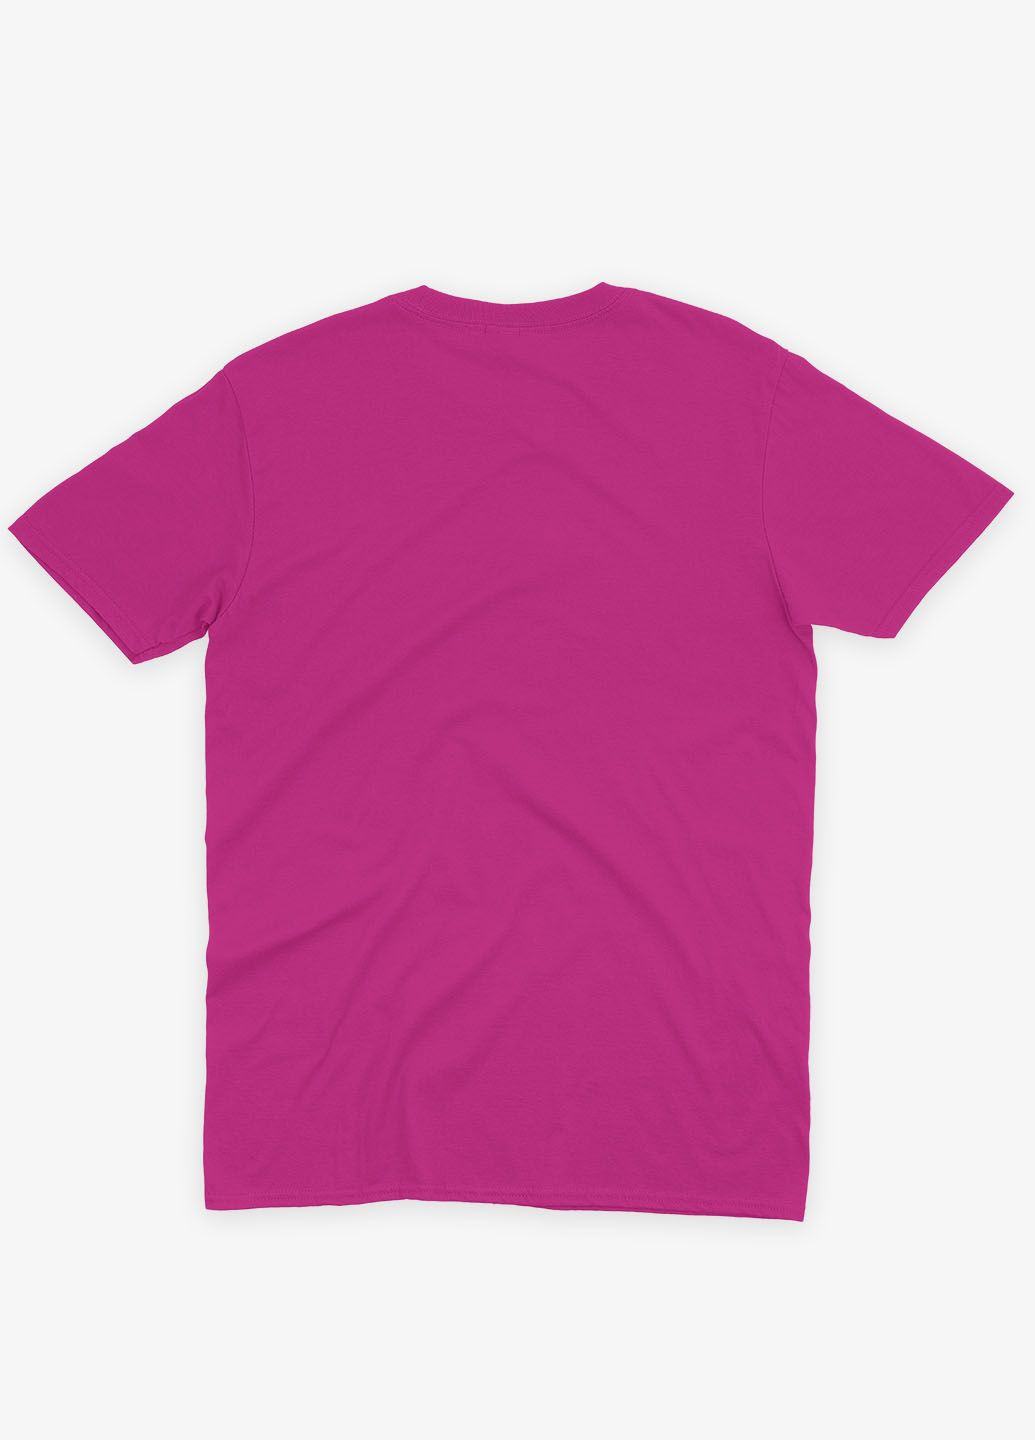 Розовая демисезонная футболка для девочки с принтом супергероя - железный человек (ts001-1-fuxj-006-016-013-g) Modno